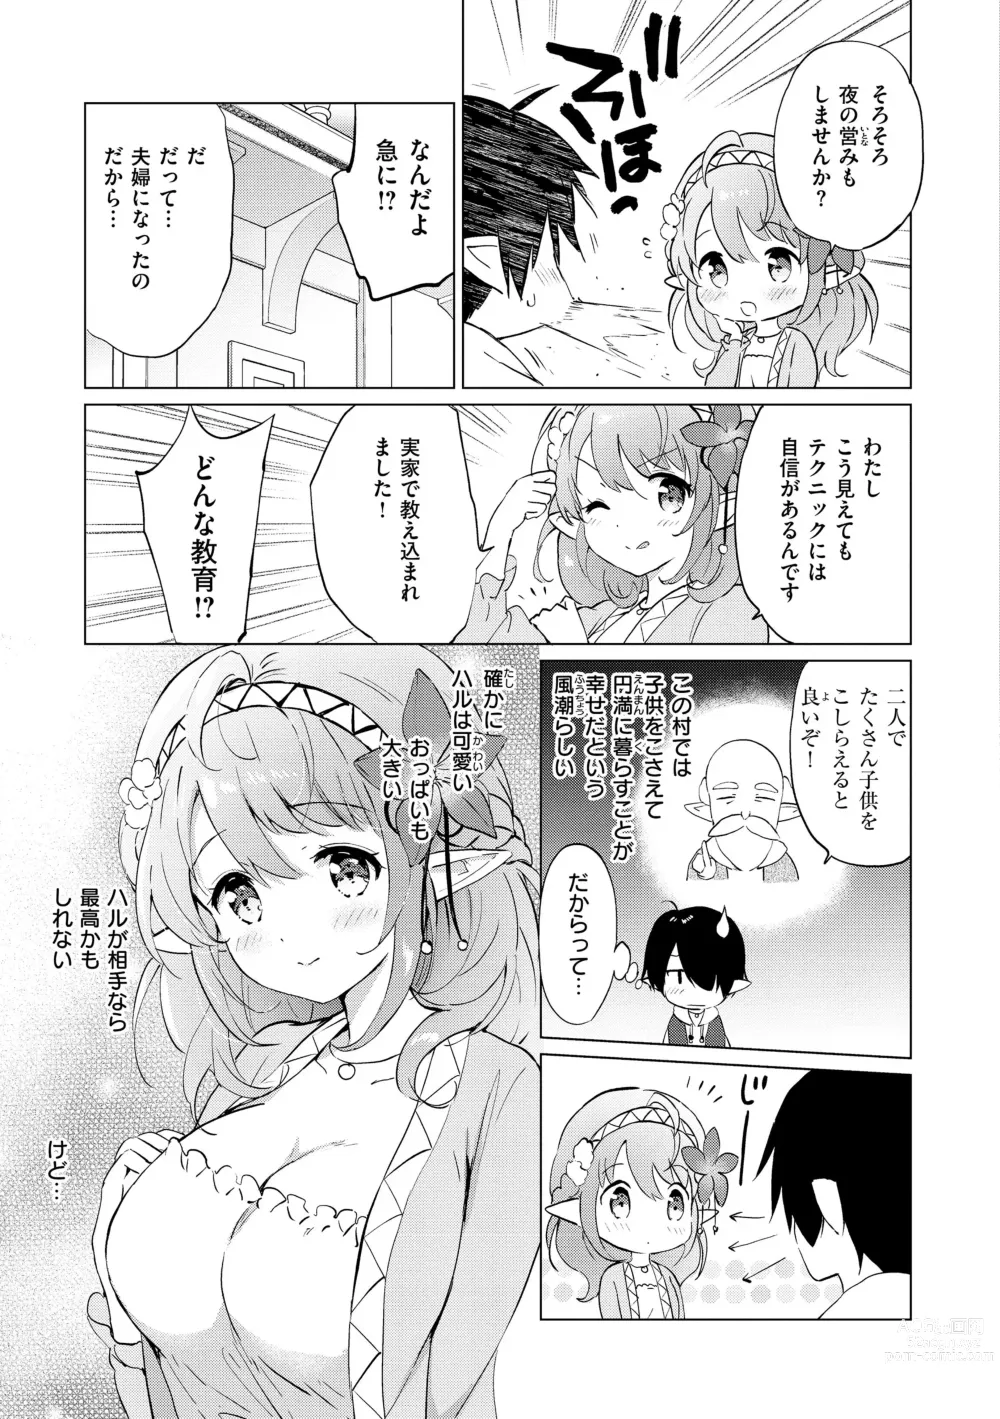 Page 9 of manga Mitsugetsu Paradise - Honeymoon Paradise